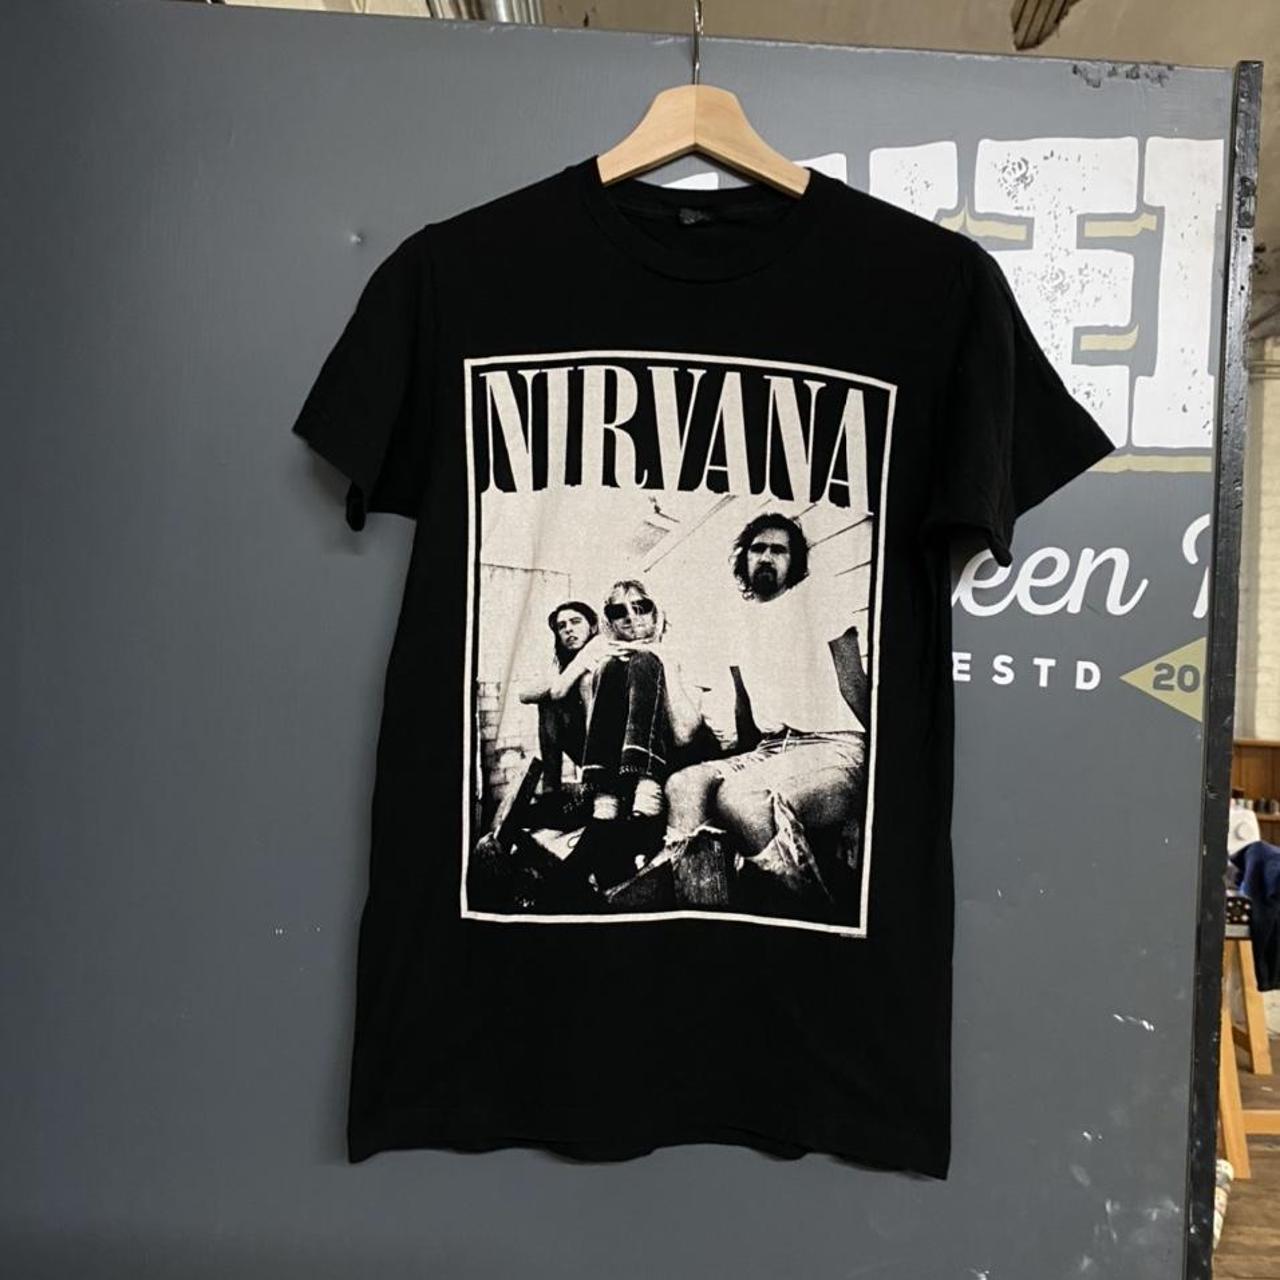 Product Image 2 - 2013 Nirvana Band rock promo